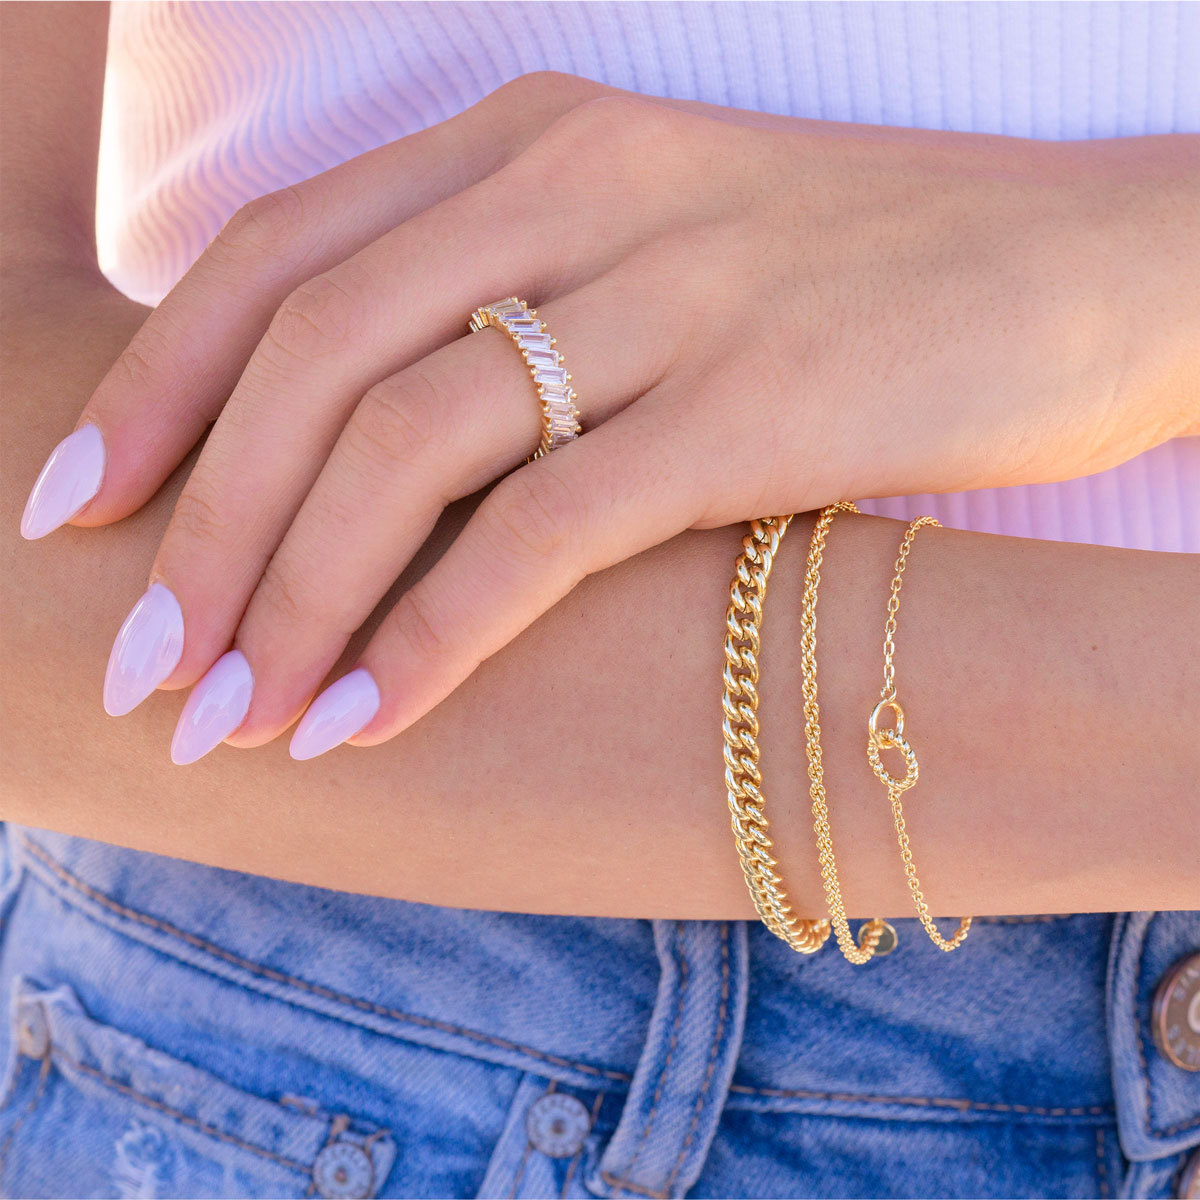 Unique gold bracelet stack on model